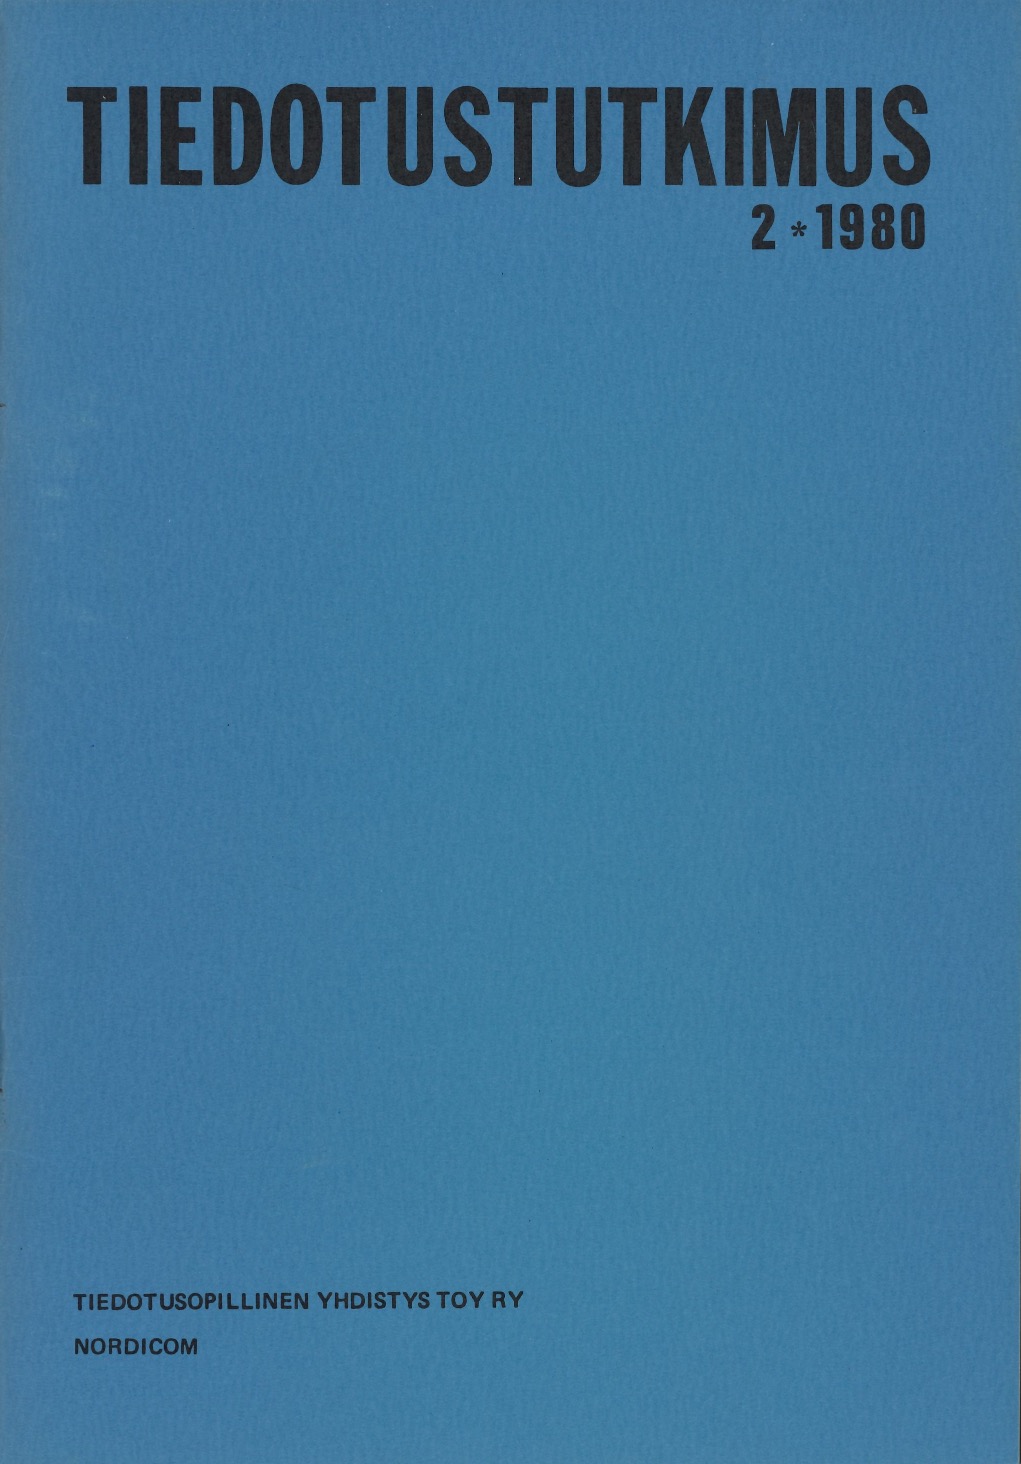 					Näytä Vol 3 Nro 2 (1980)
				